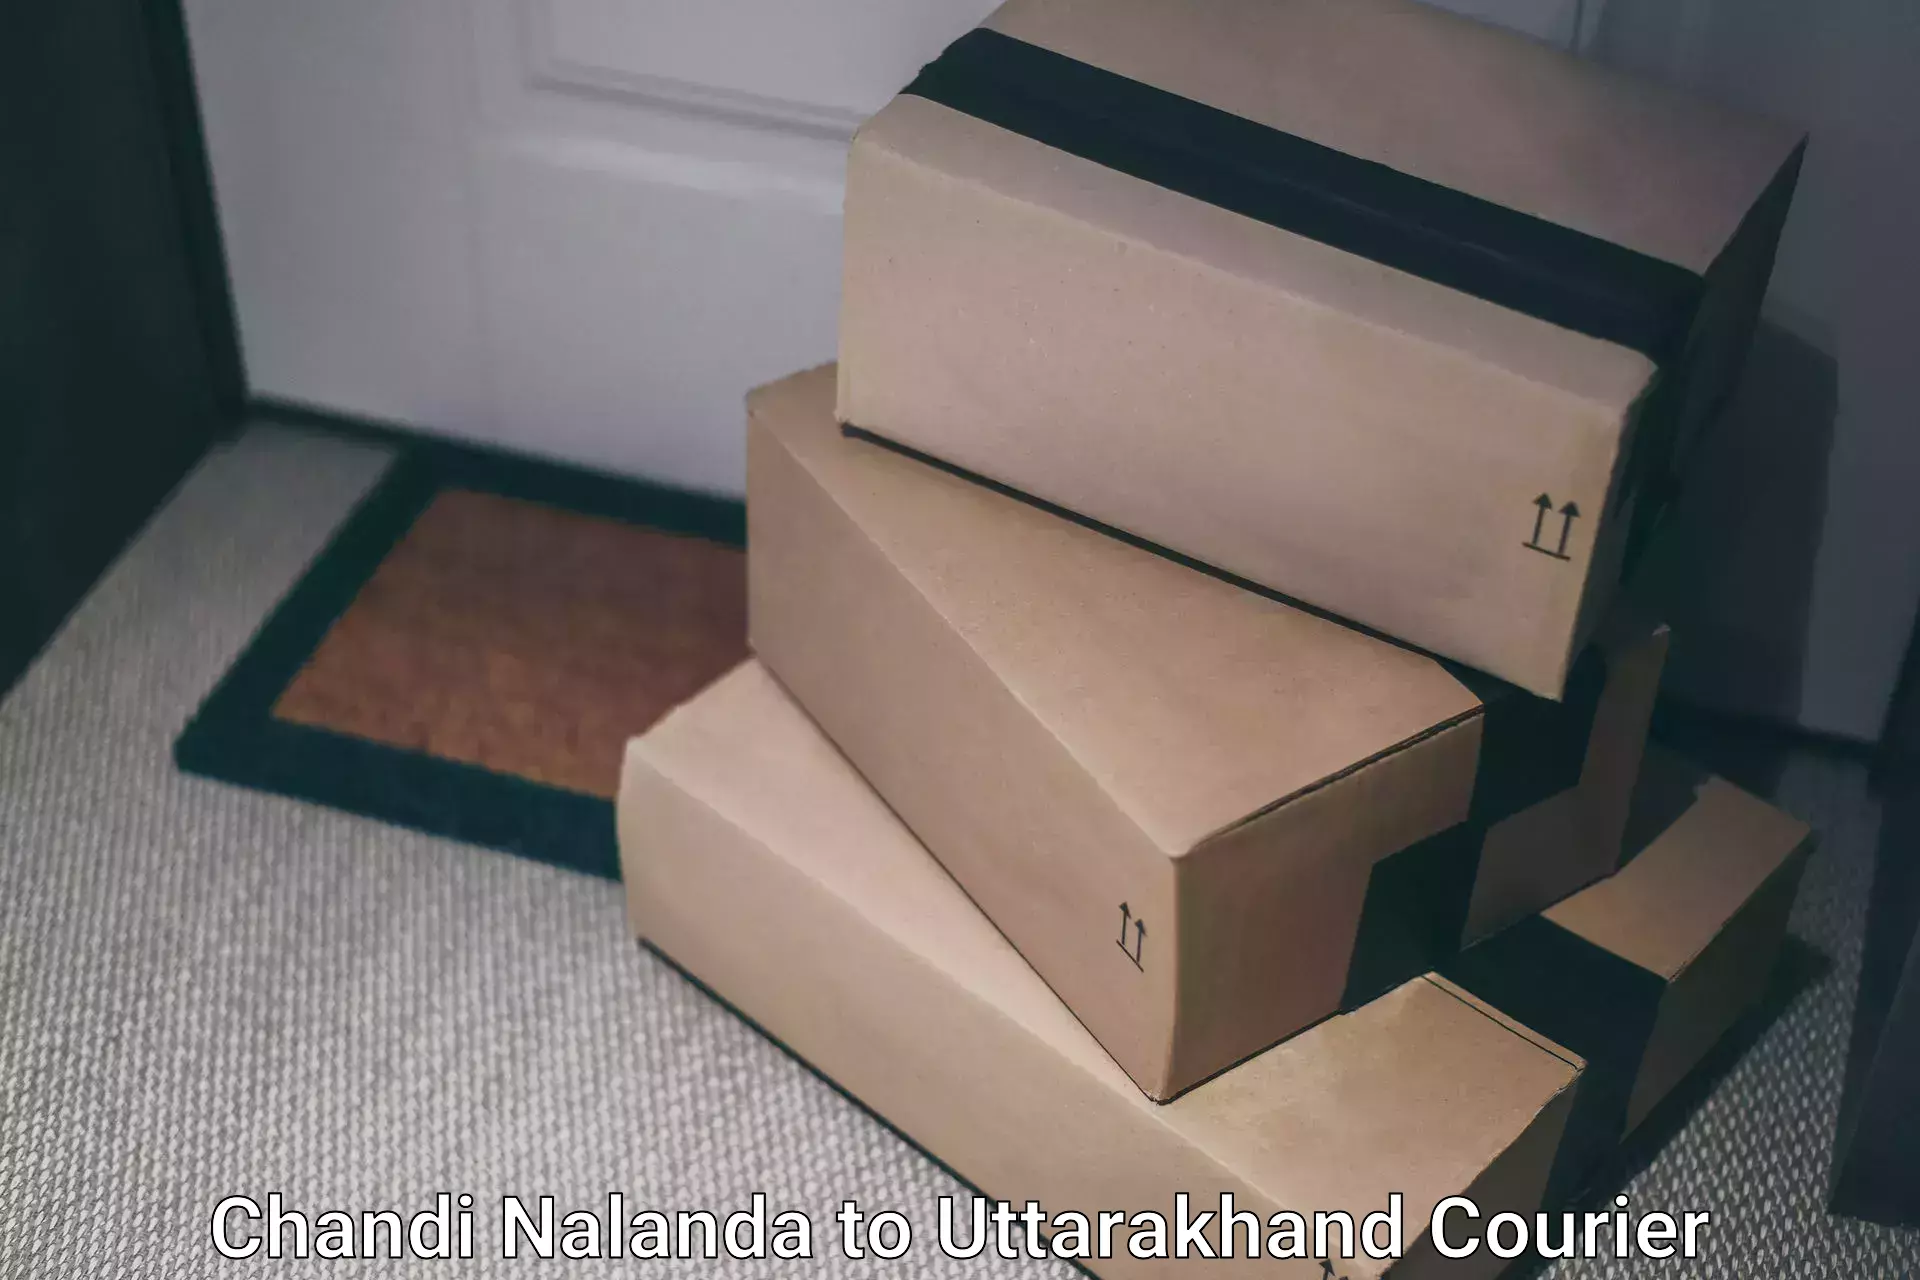 Global shipping solutions Chandi Nalanda to Uttarkashi